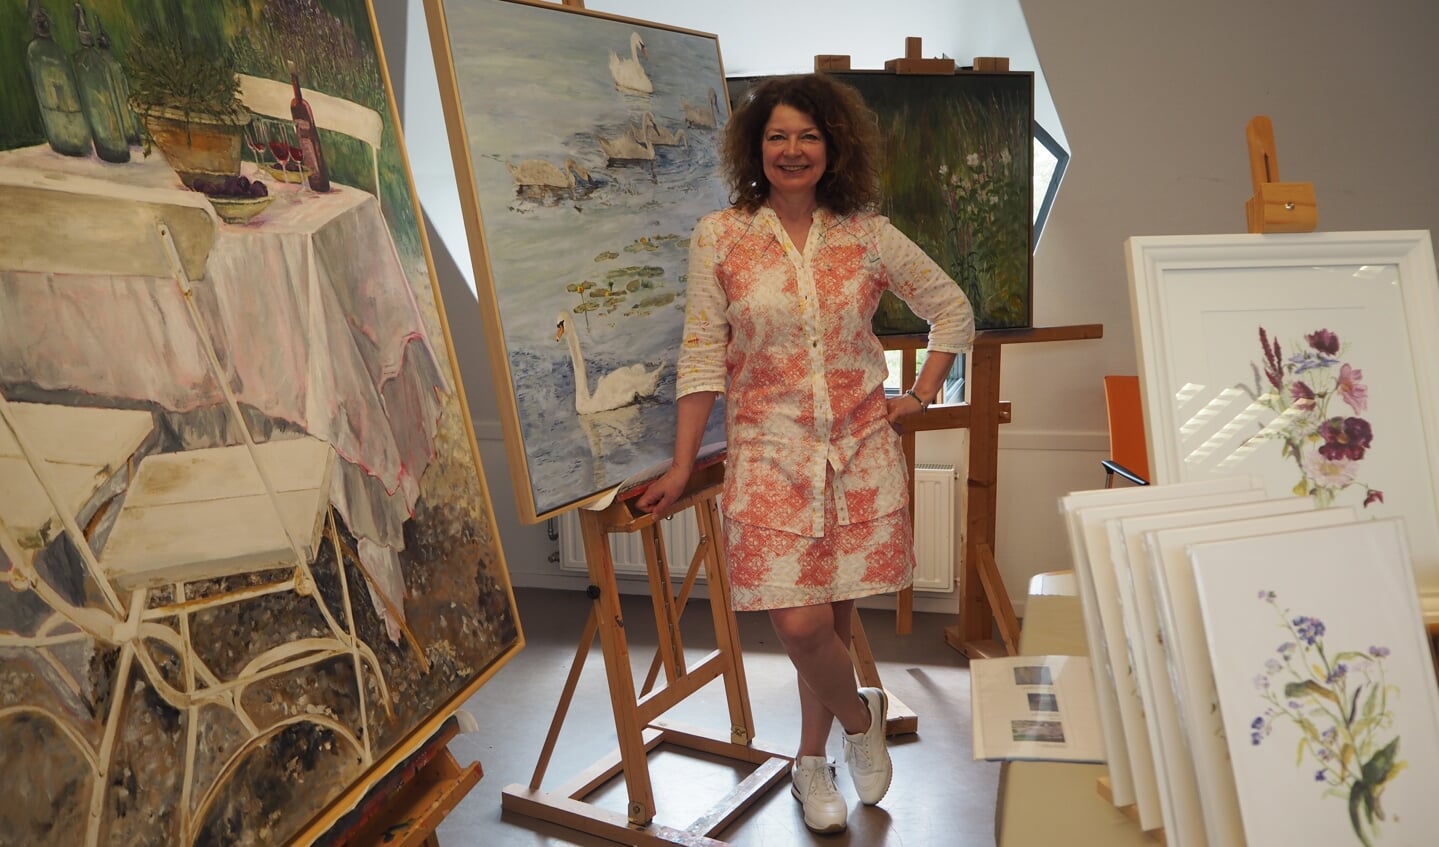 De Woudenbergse Janny van de Broek exposeerde samen met MarYane Nas in het Cultuurhuis Woudenberg, waar ook de overzichtstentoonstelling van de 59 deelnemende kunstenaars was.